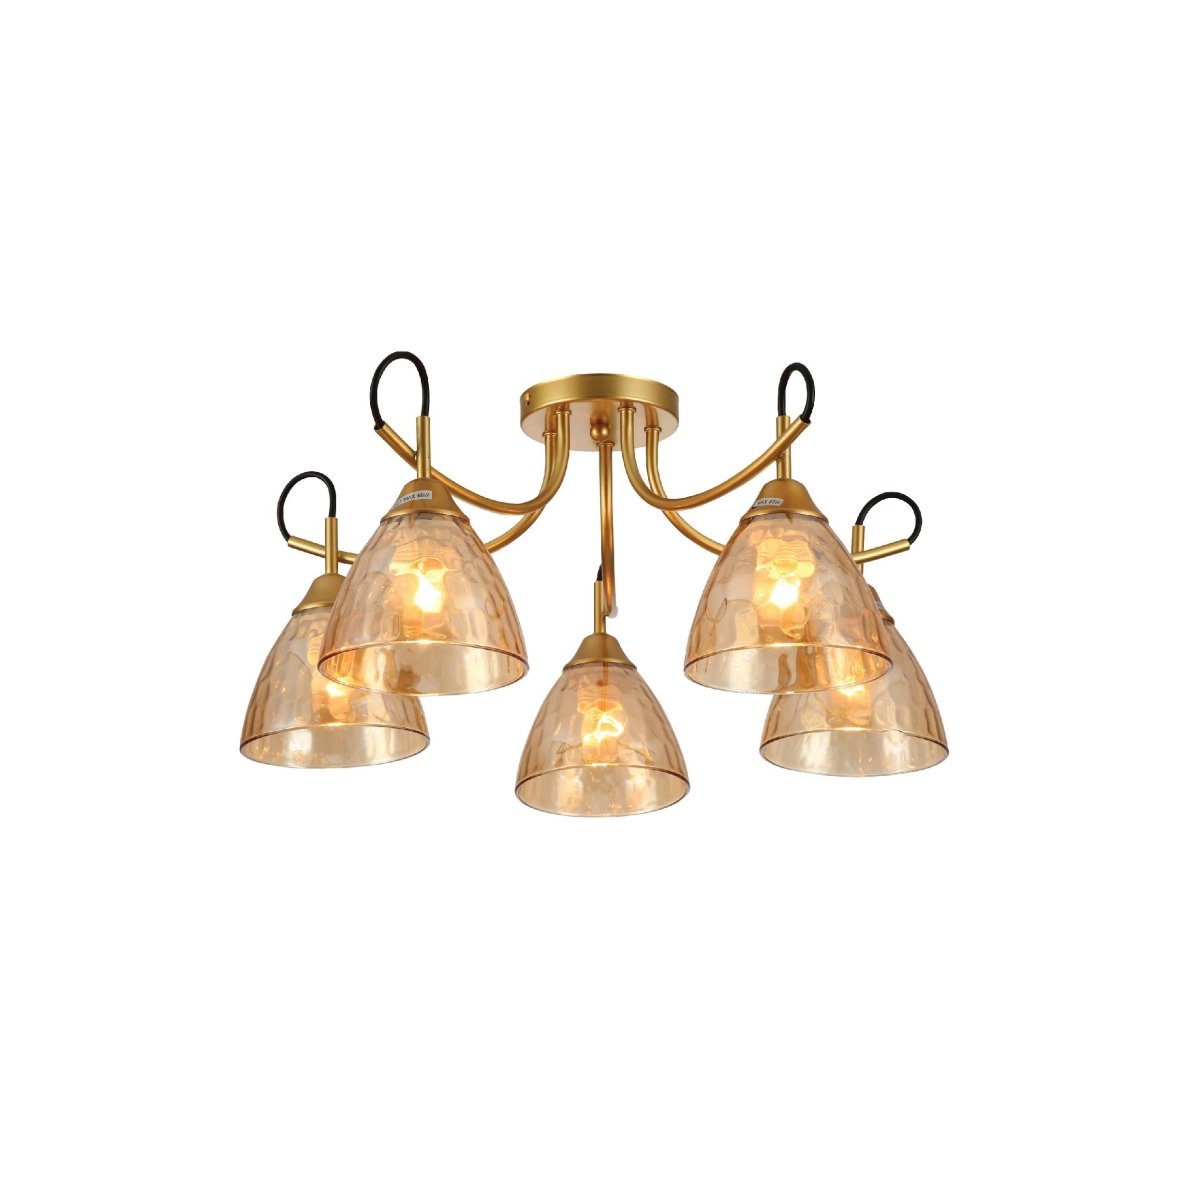 Main image of Amber Cone Glass Gold Semi Flush Ceiling Light E27 | TEKLED 159-17642